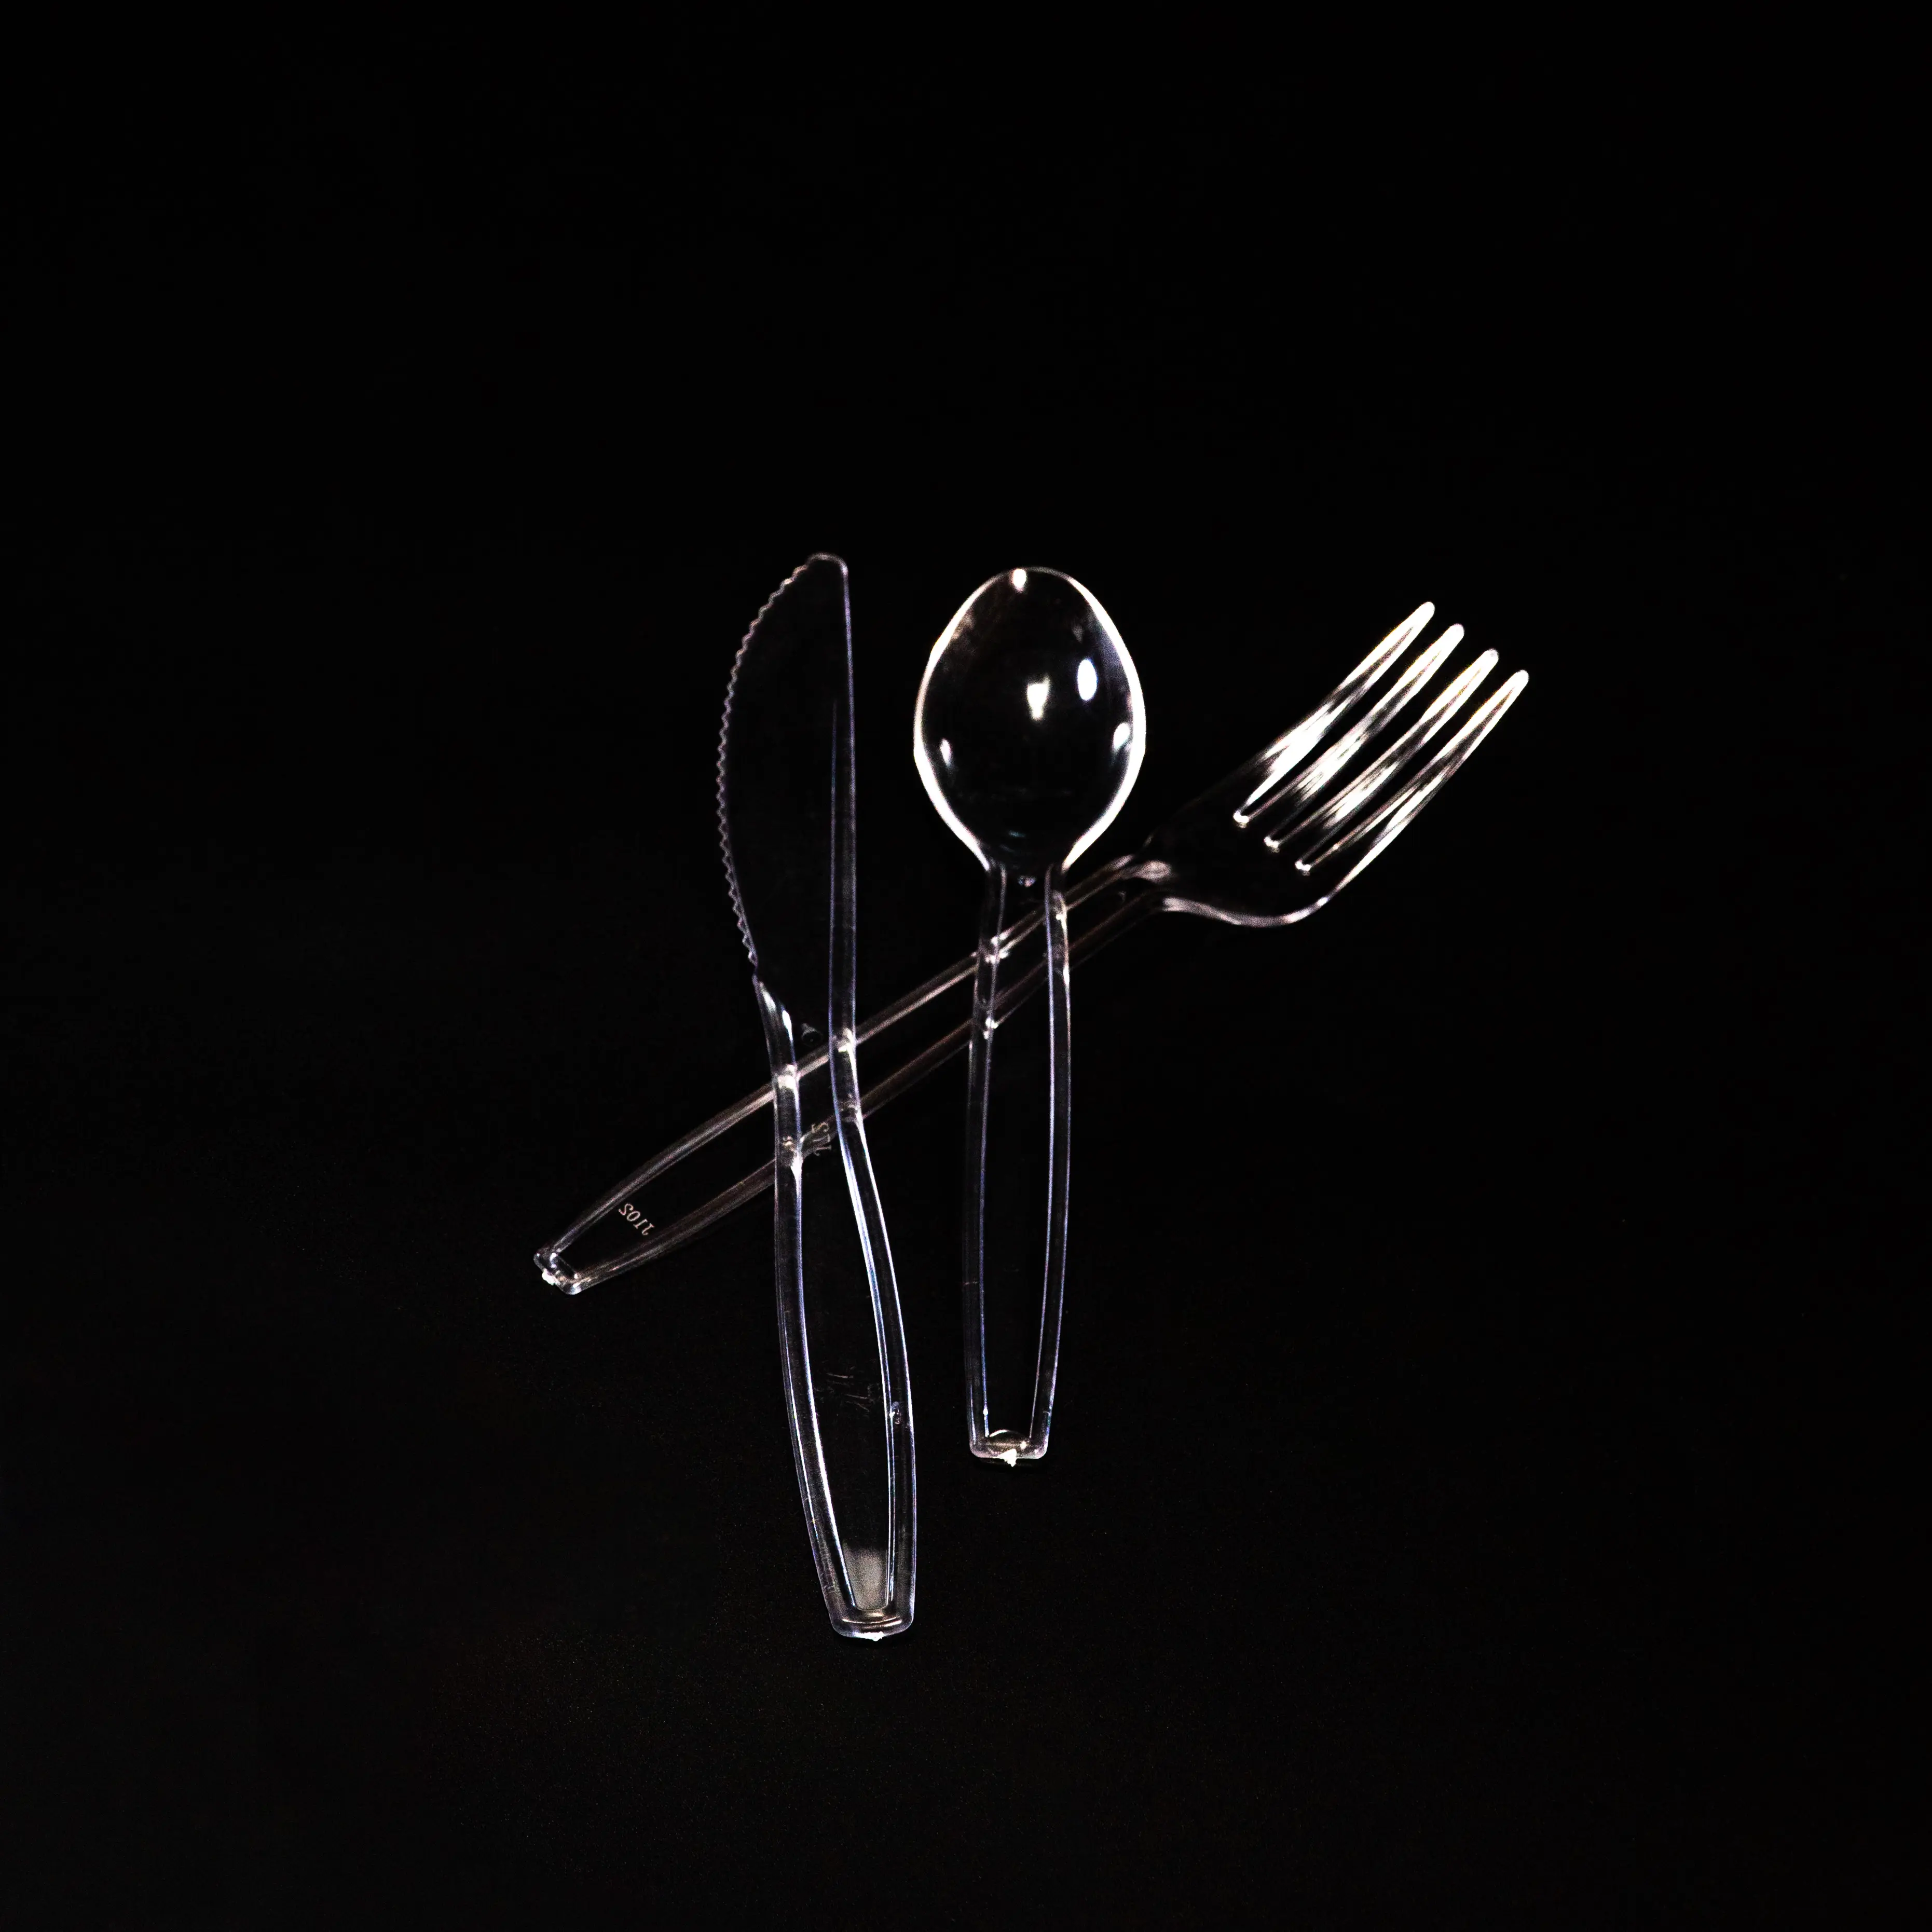 المتاح واضح طقم أدوات المائدة بلاستيكي للمنزل حزب الزفاف تشمل شوكة سكين و ملعقة 3.8g